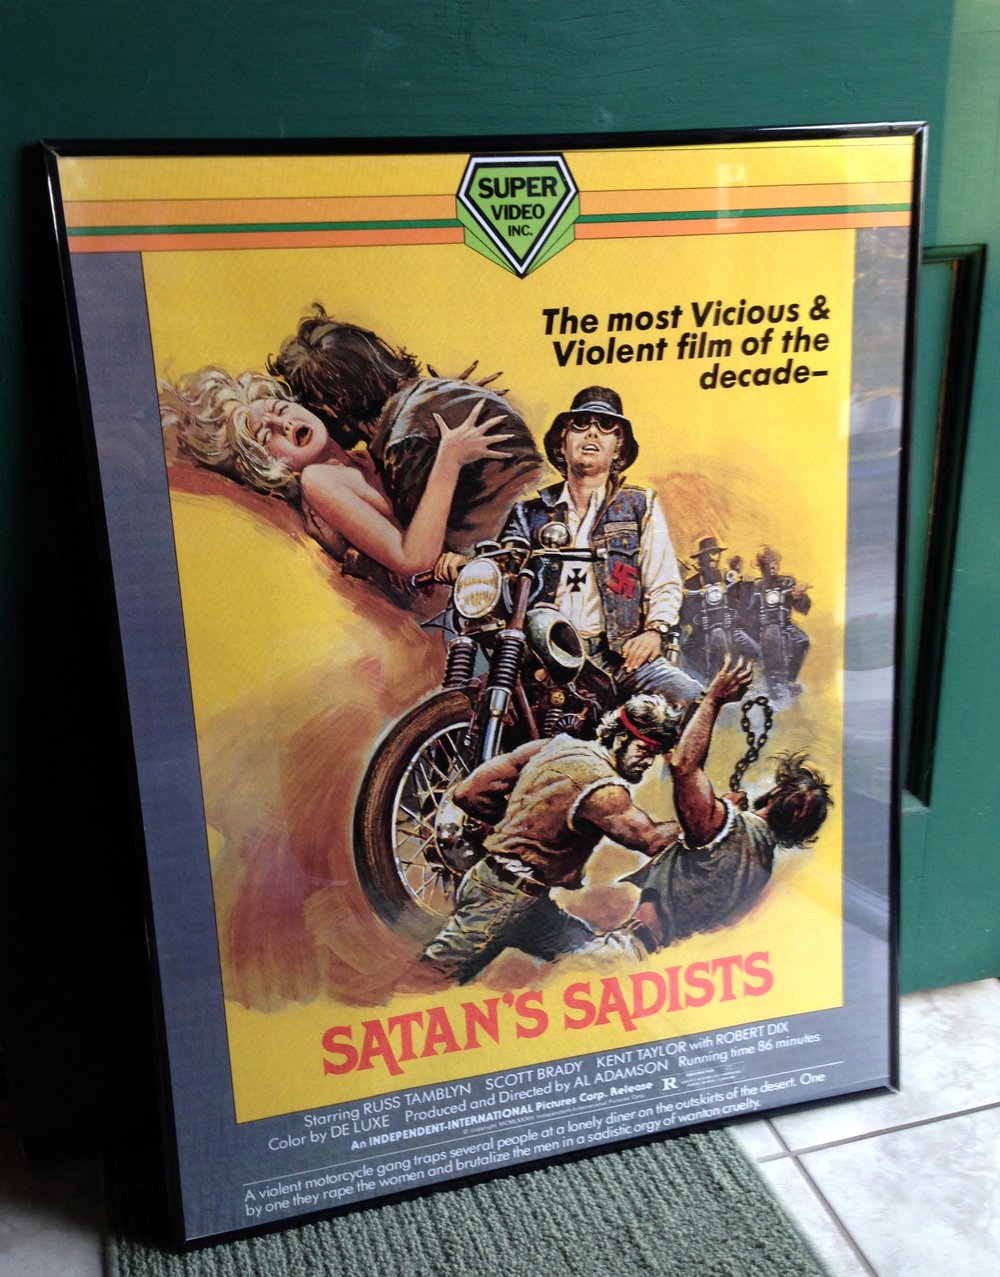 1969 SATAN'S SADISTS Super Video VHS Box Art Poster 24 x 36" AL ADAMSON